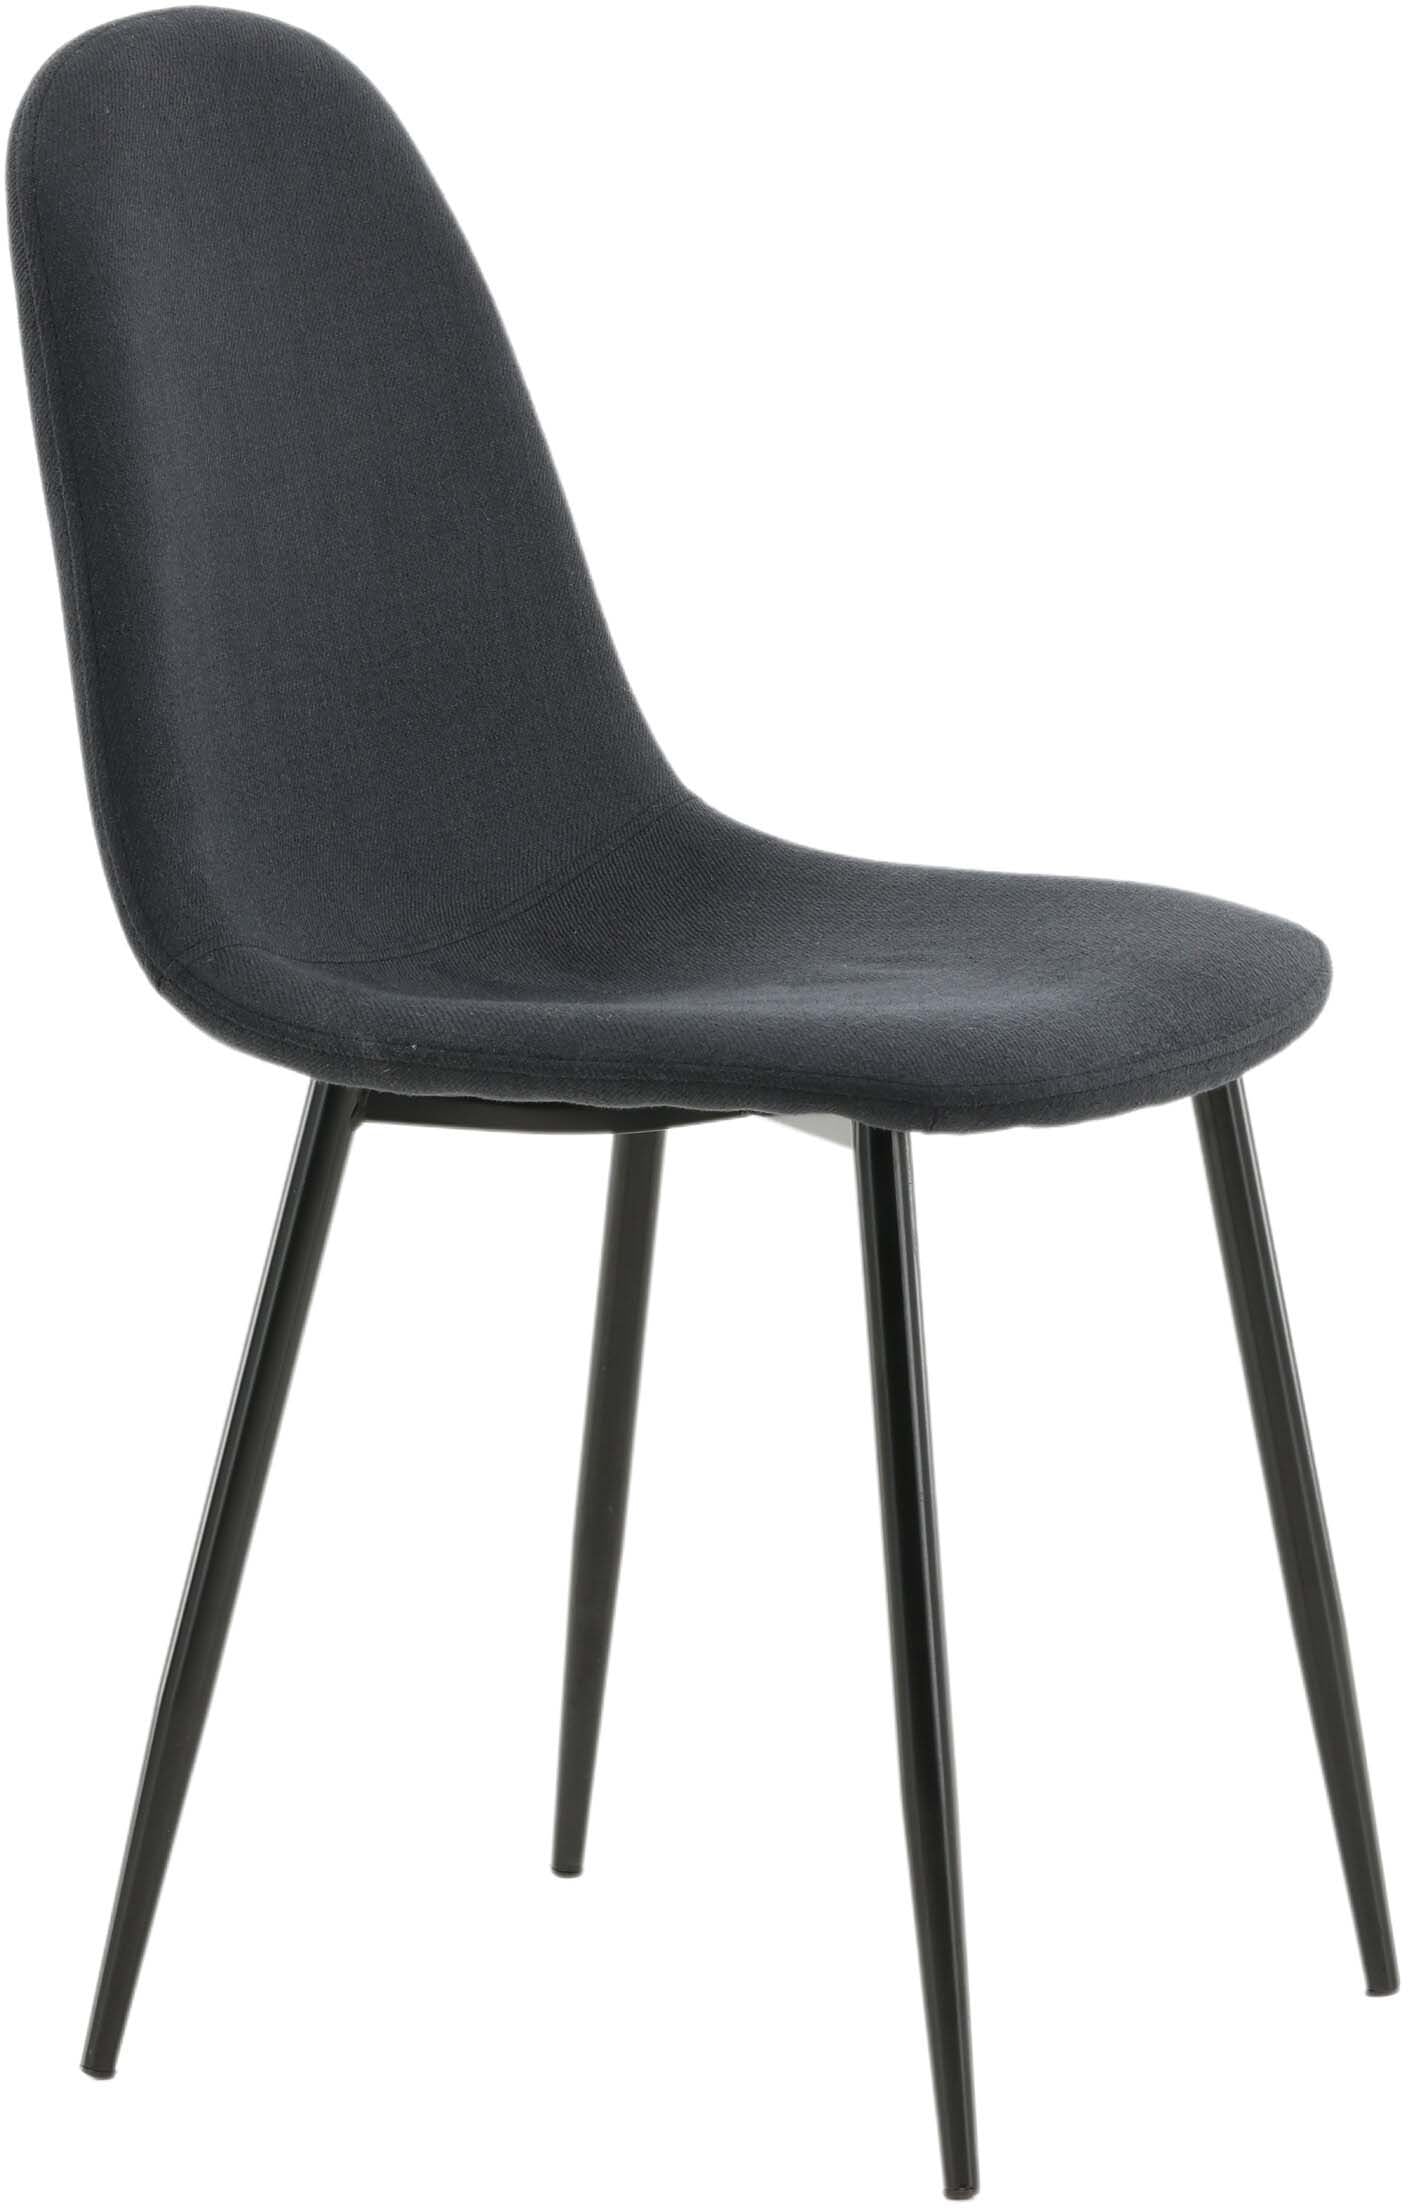 Polar Stuhl in Schwarz/Schwarz präsentiert im Onlineshop von KAQTU Design AG. Stuhl ist von Venture Home